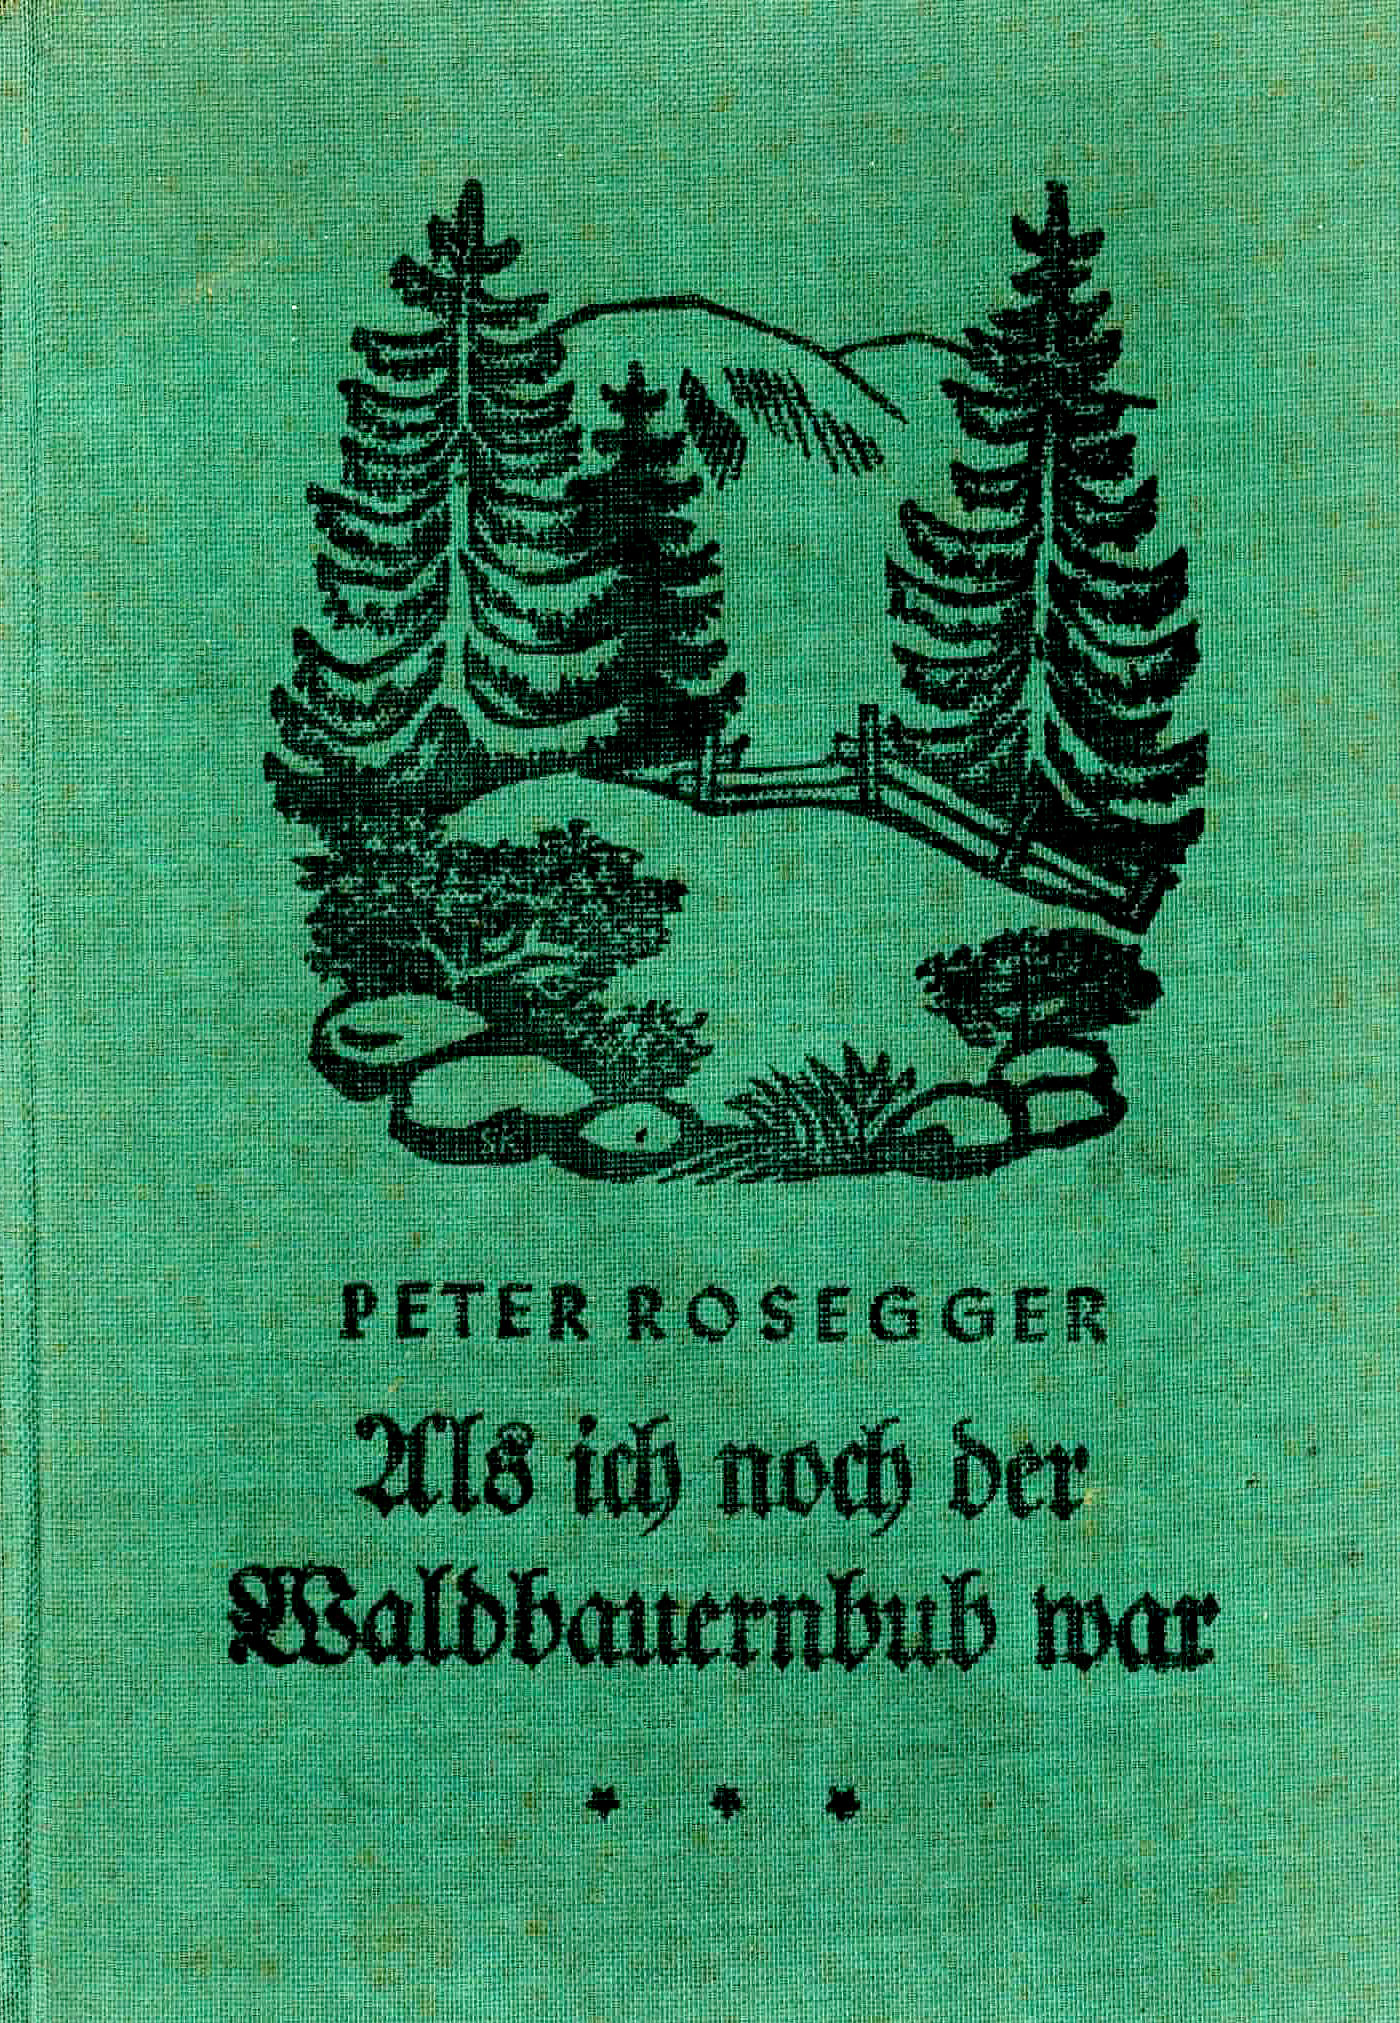 Als ich noch Waldbauernbub war - Rosegger, Peter